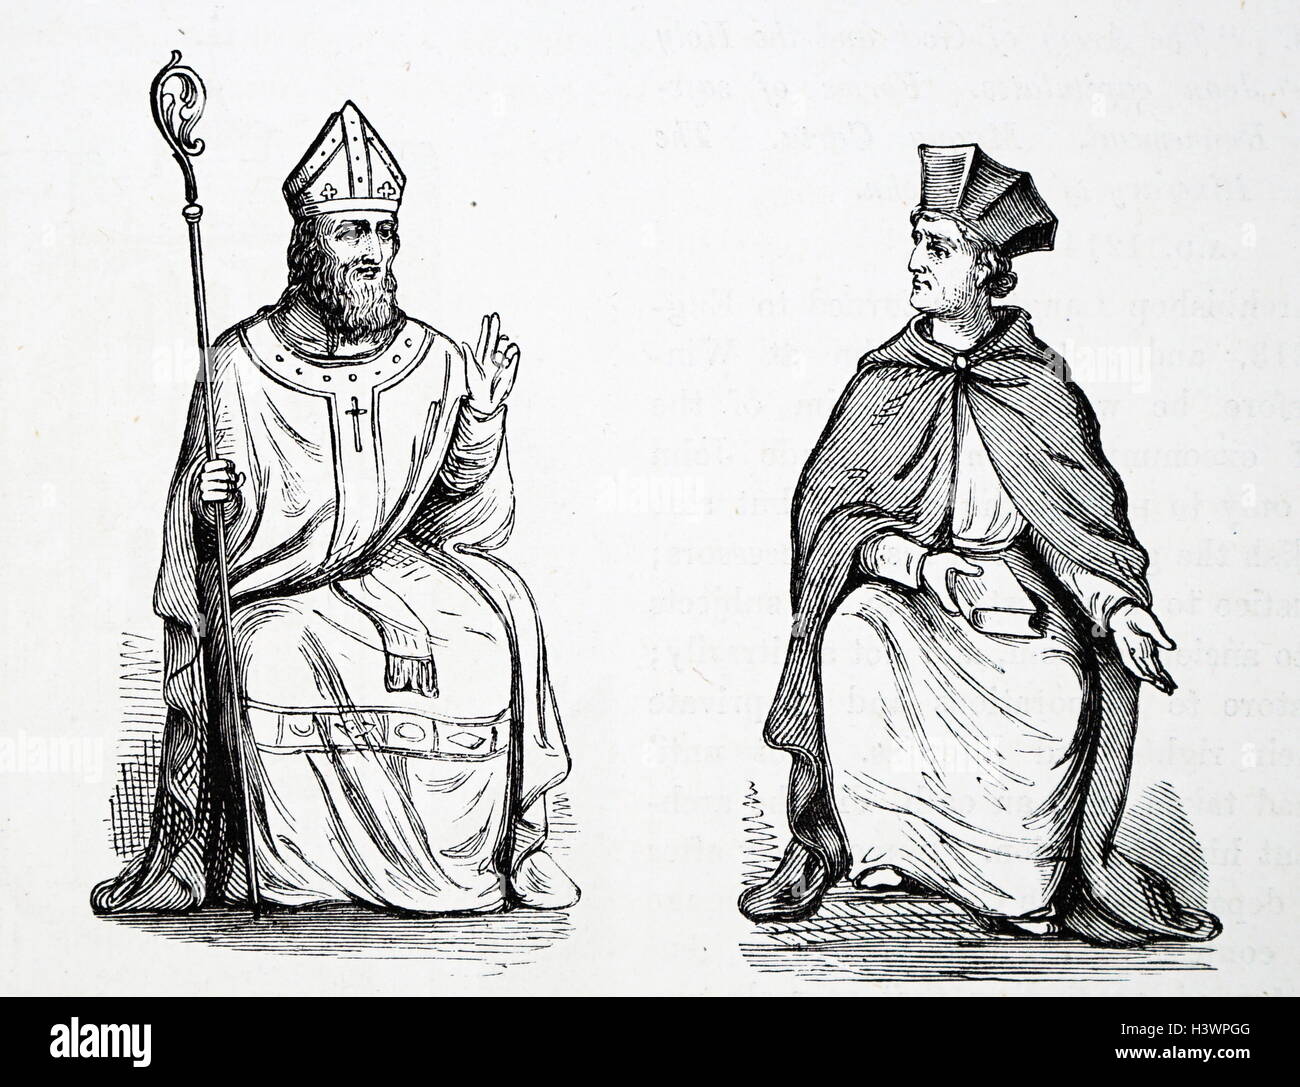 Grabado de un medieval arzobispo y cardenal. Fecha del siglo XIV. Foto de stock